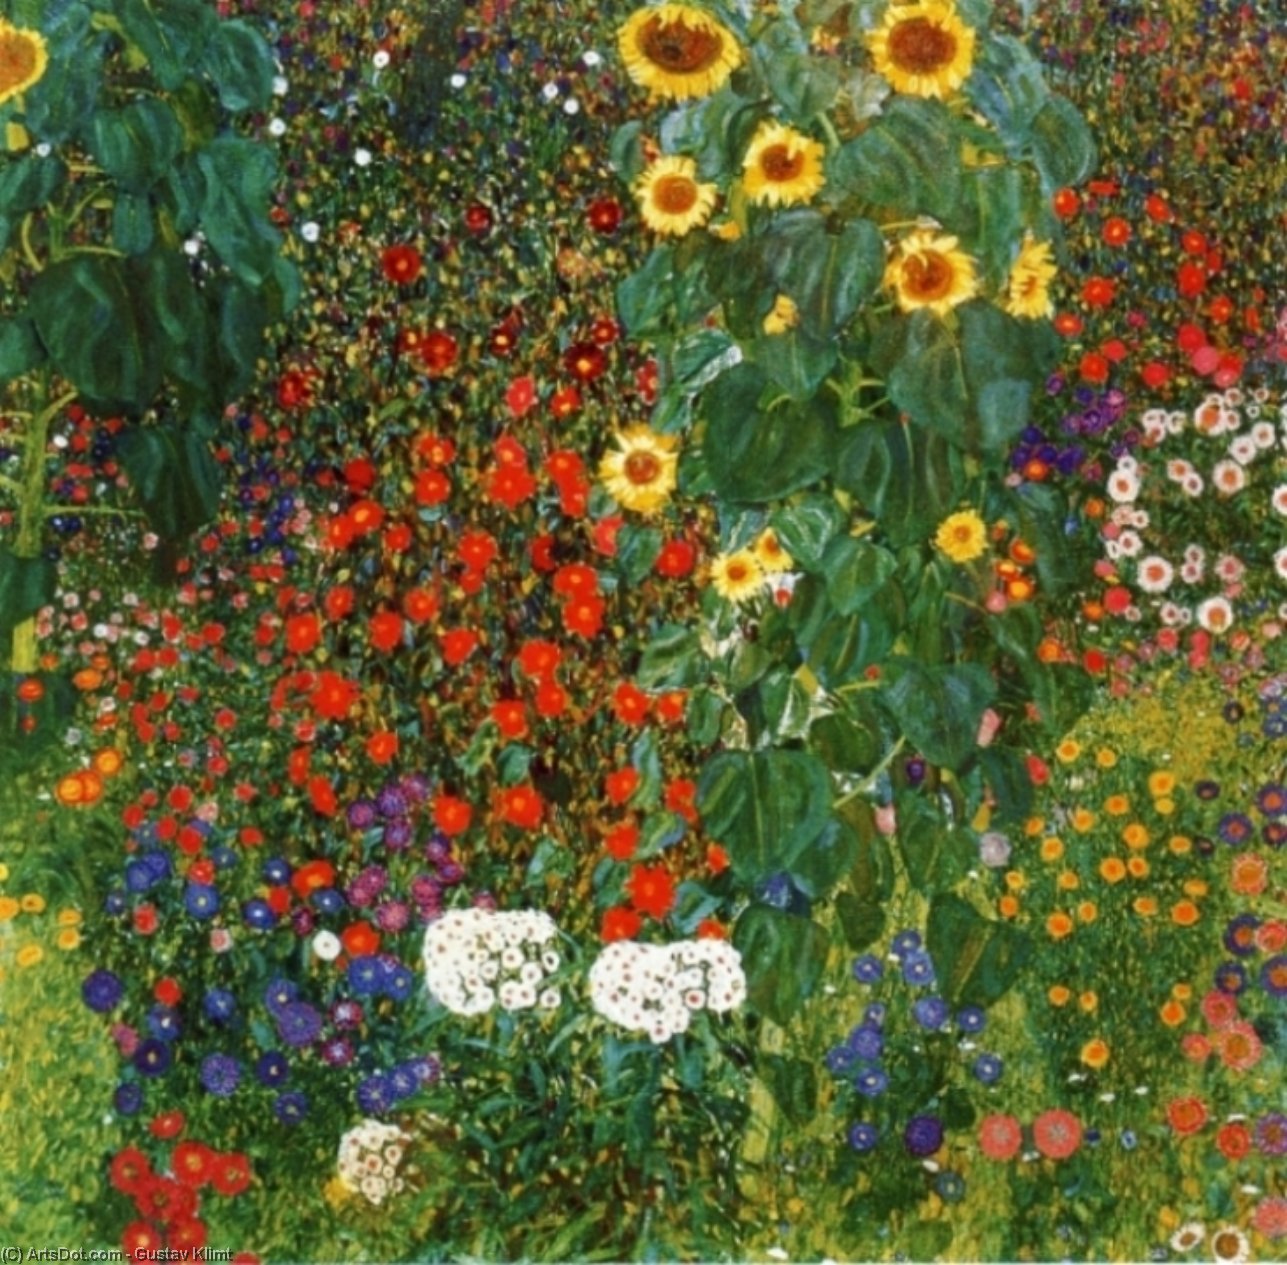 Achat Reproductions D'art Jardin agricole avec tournesol, 1907 de Gustave Klimt (1862-1918, Austria) | ArtsDot.com